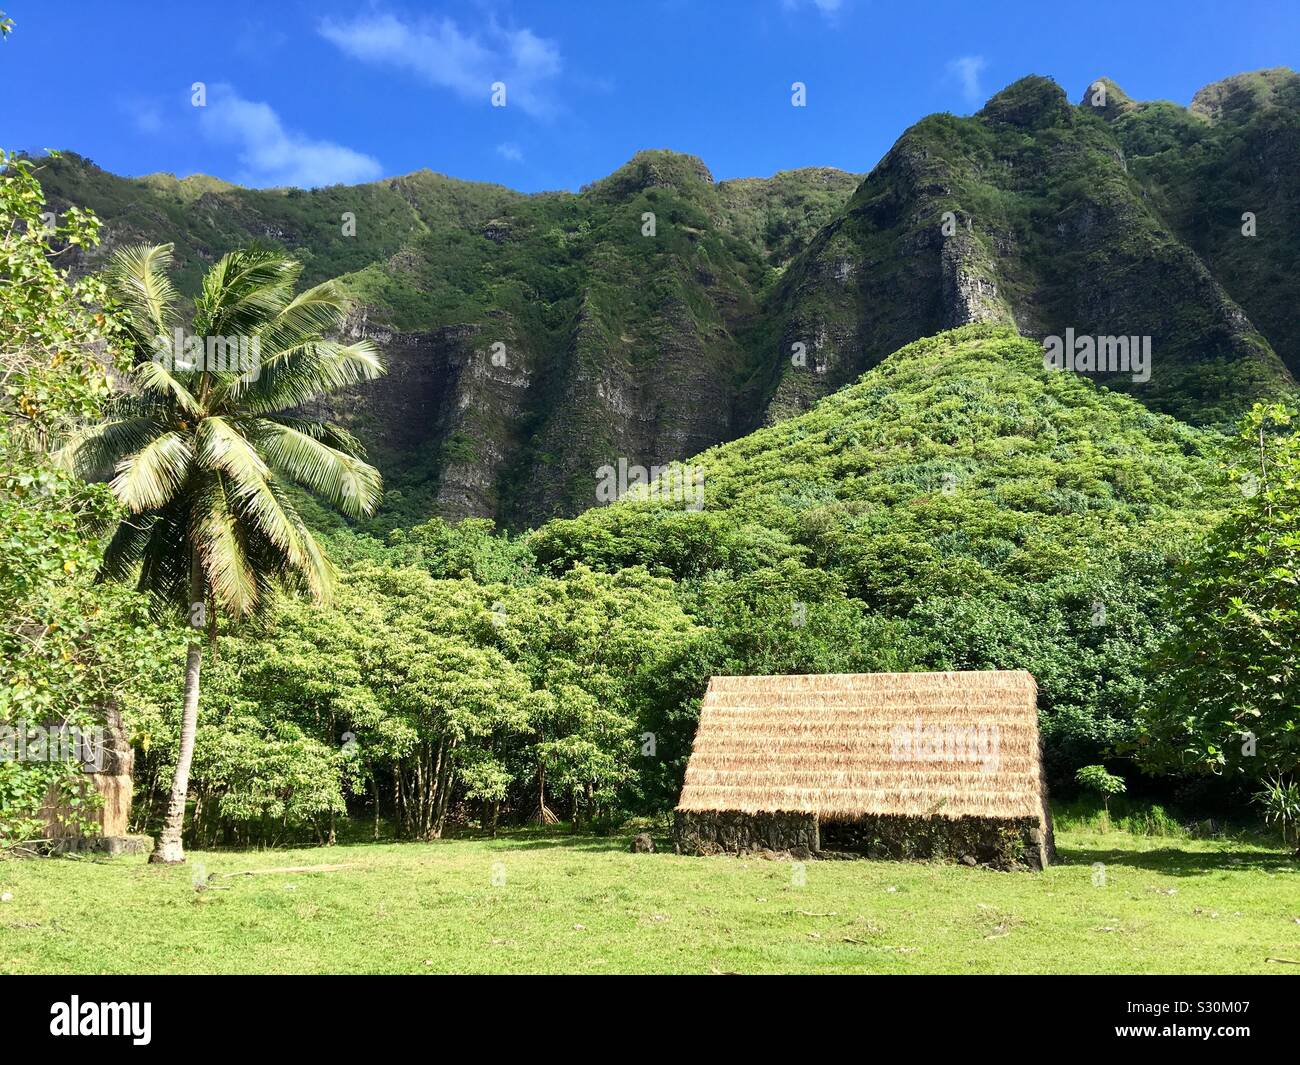 Emplacement pour film Jumanji Bienvenue dans la jungle filmée au Ranch de Kualoa sur Oahu, Hawaii Banque D'Images